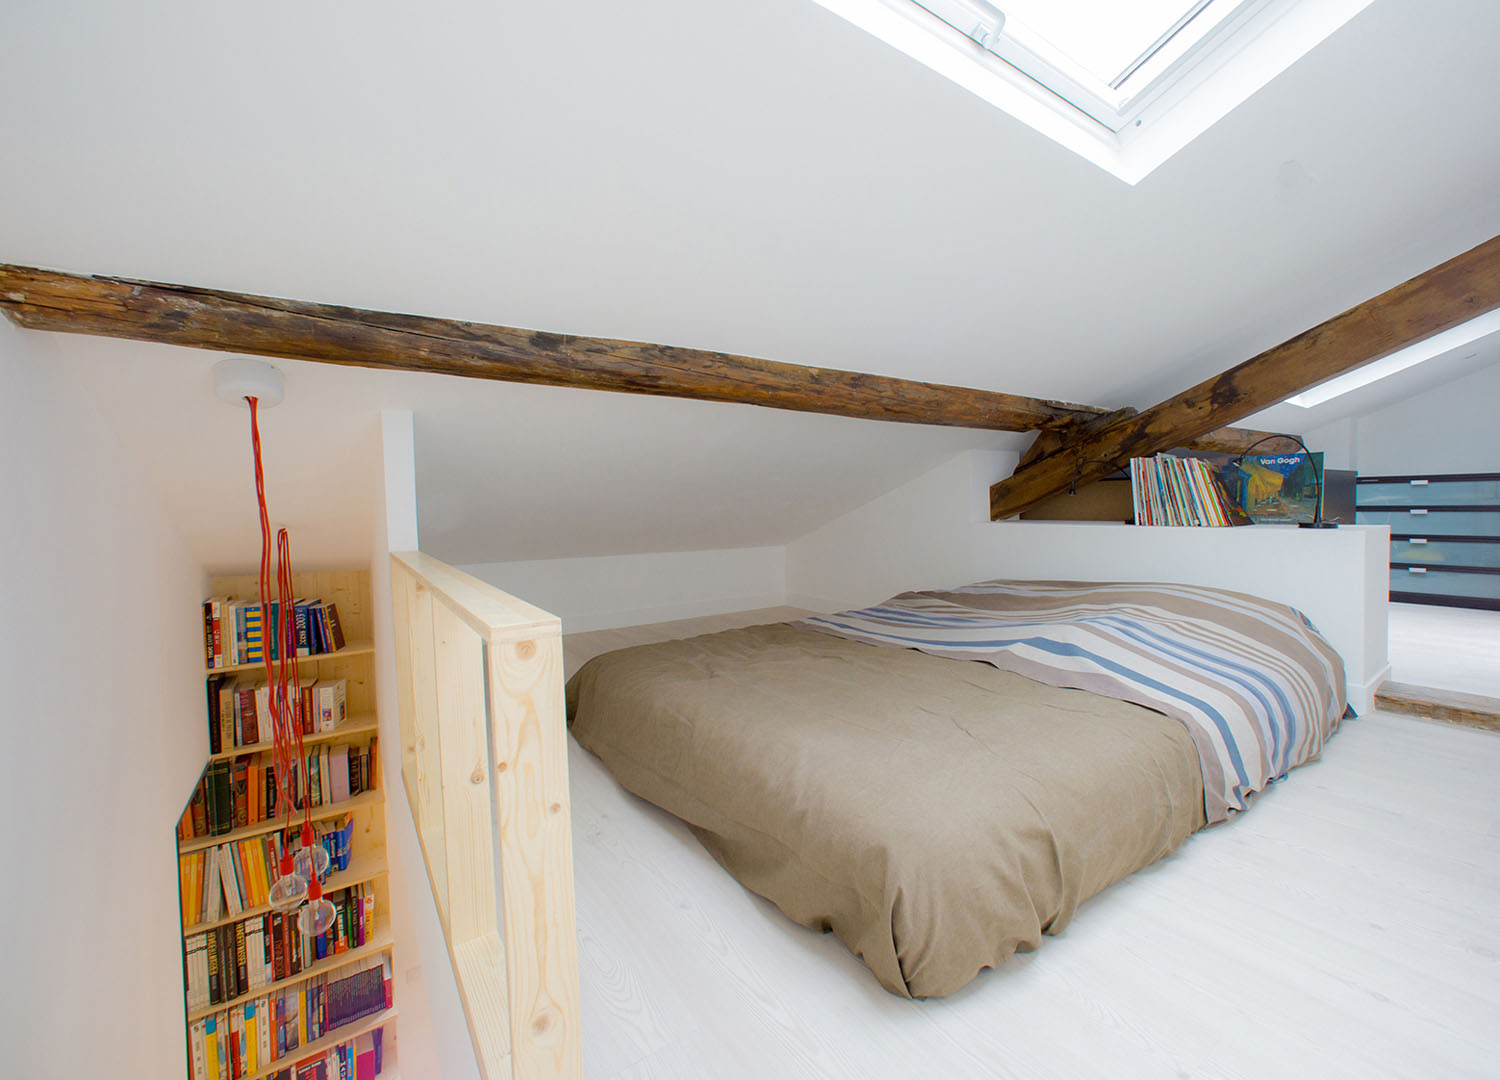 Attic Bedroom Loft